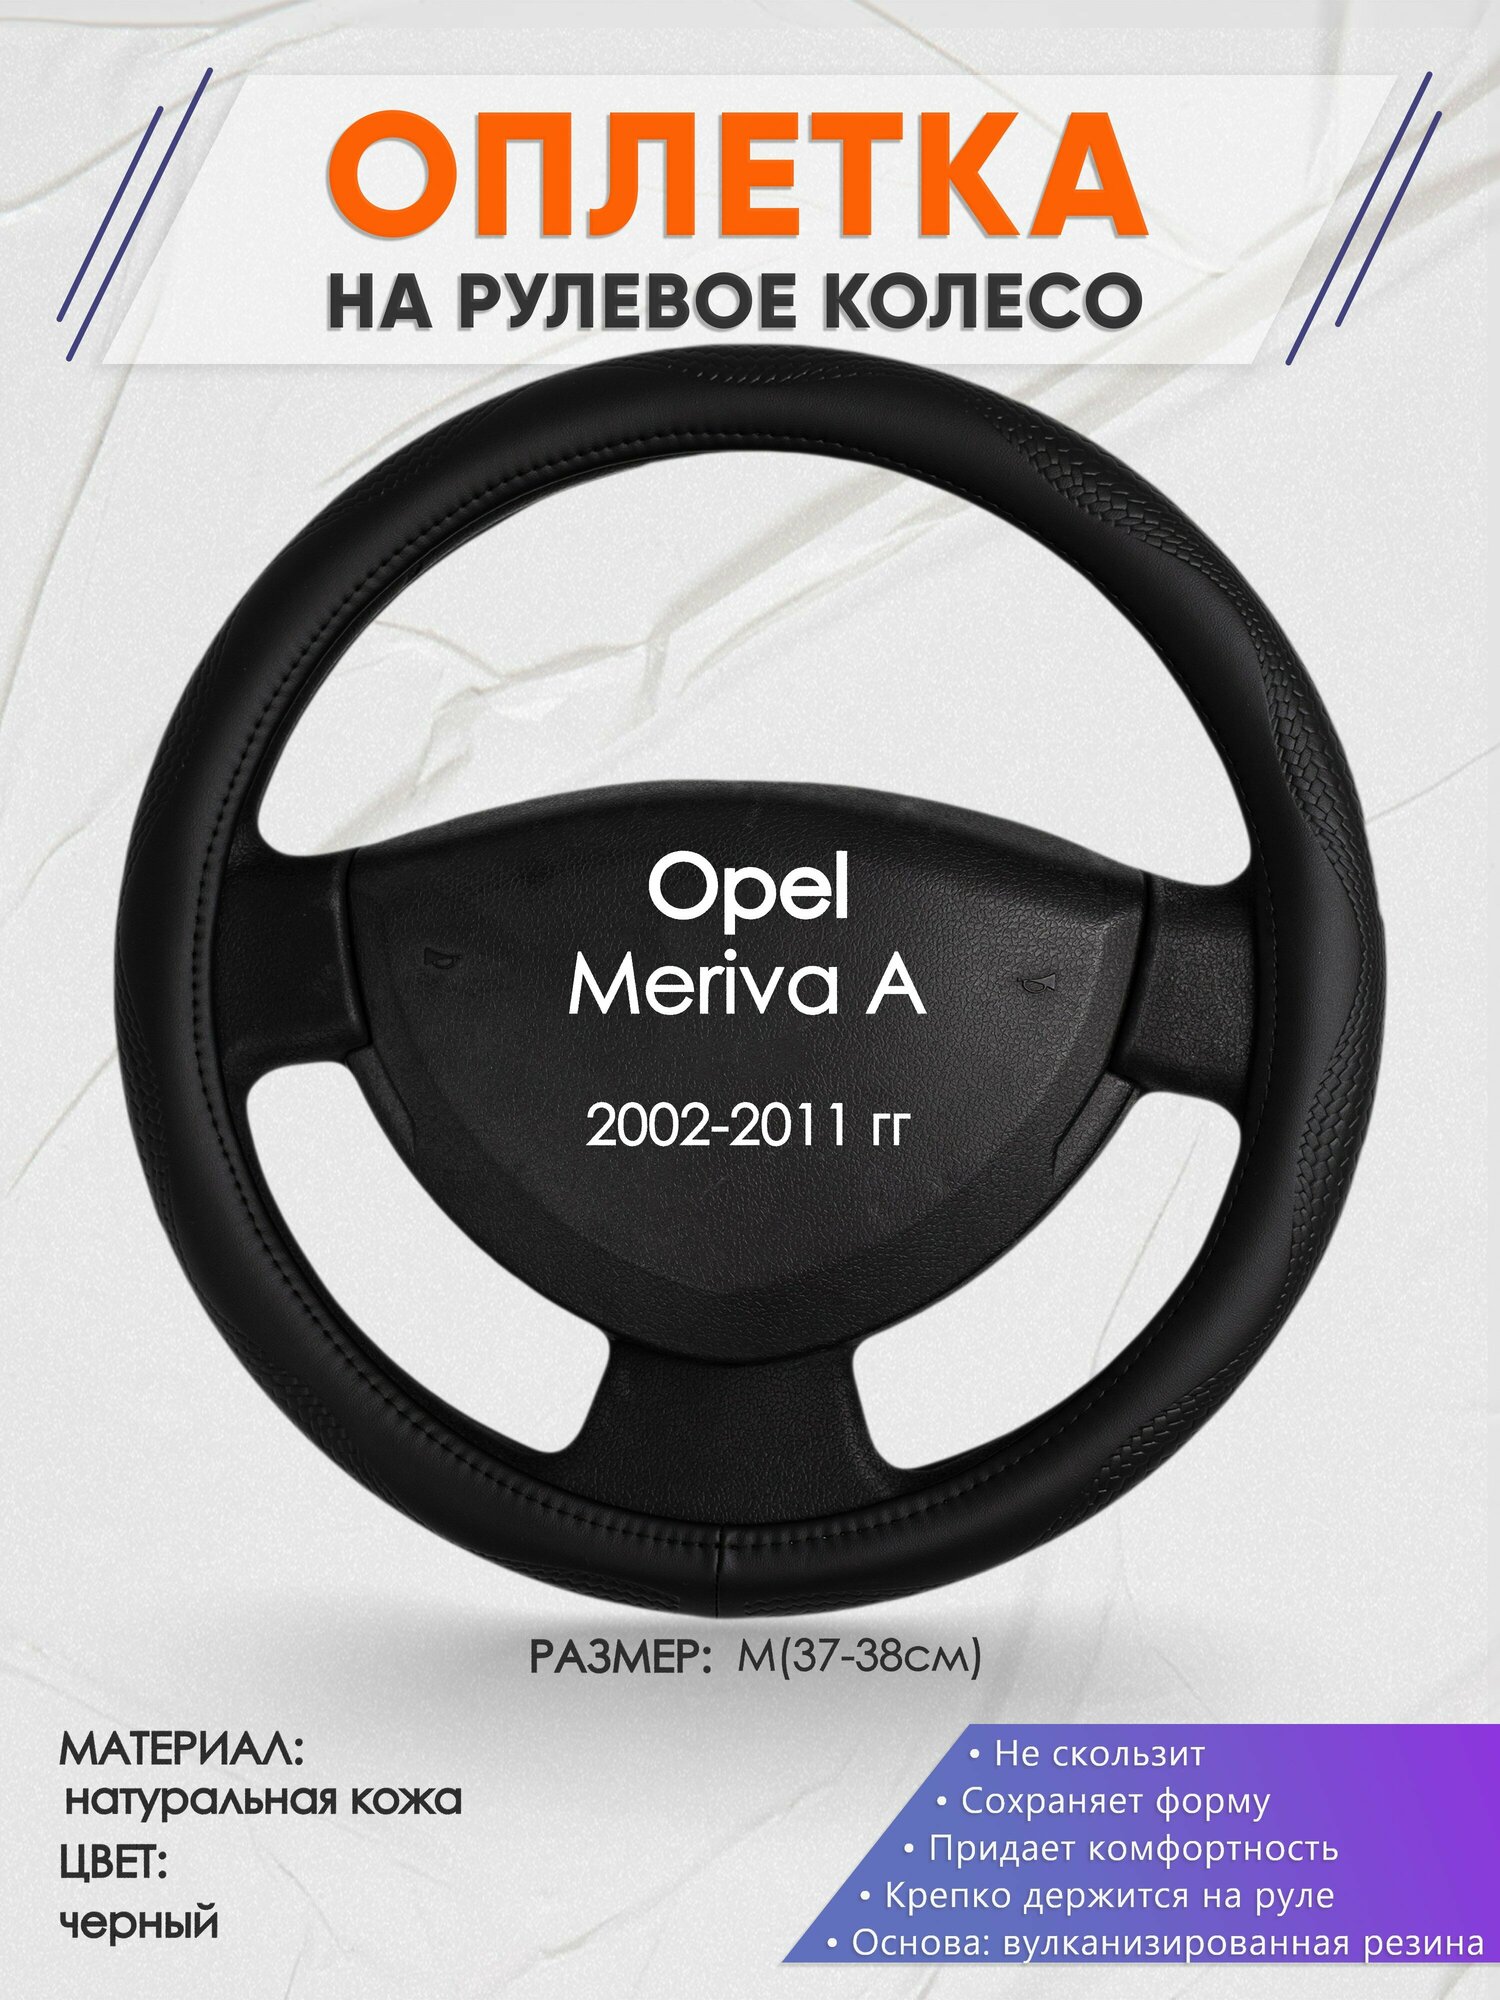 Оплетка на руль для Opel Meriva A(Опель Мерива А) 2002-2011 M(37-38см) Натуральная кожа 31